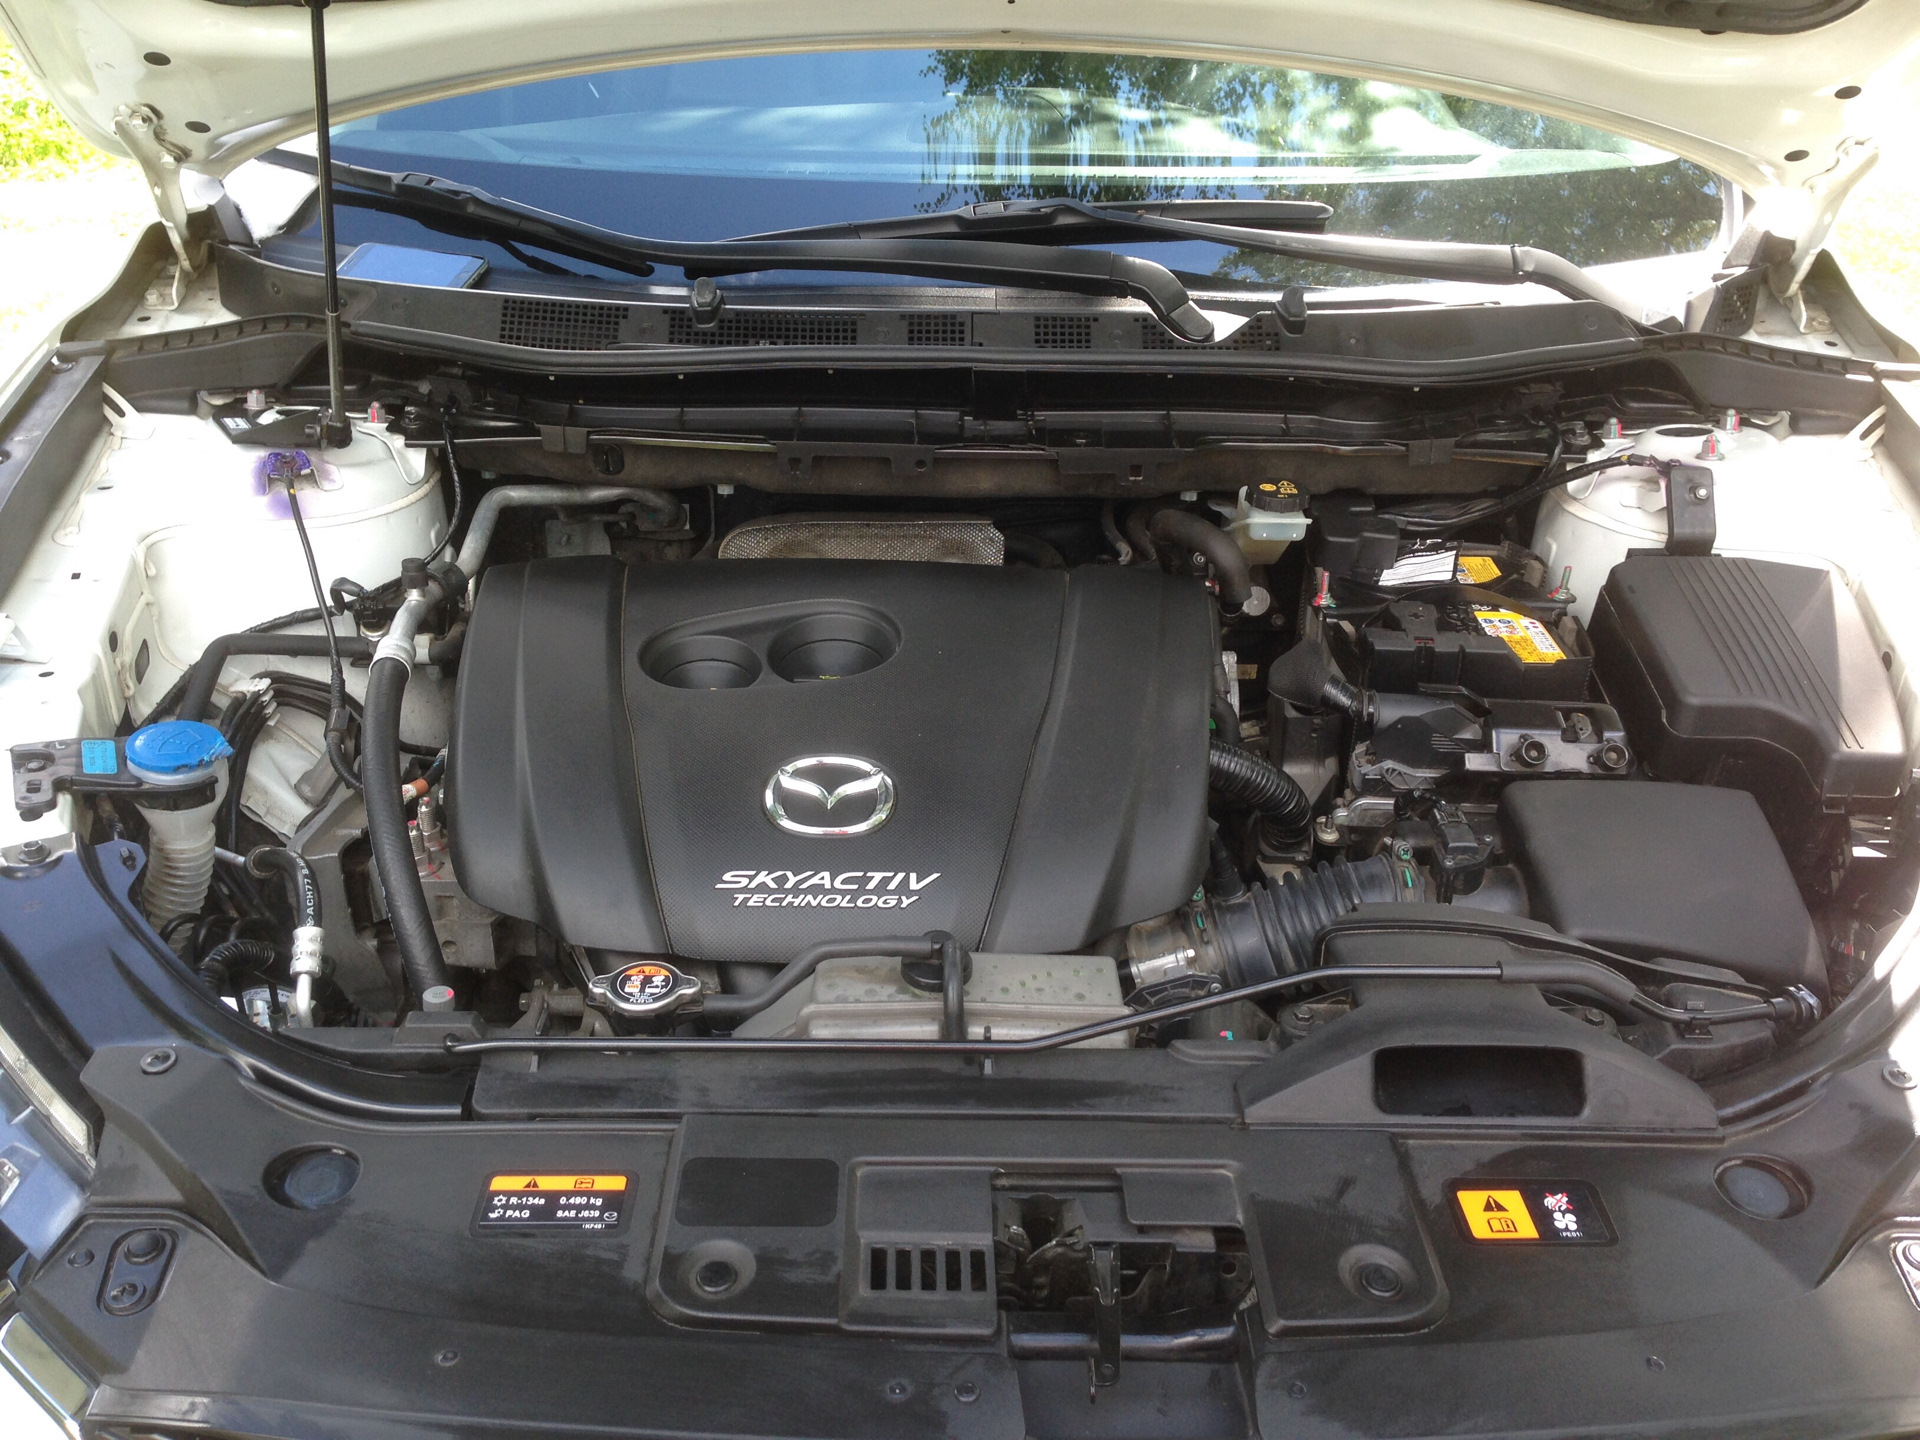 Мазда сх5 двигатель 2. Mazda CX 5 под капотом. Моторный отсек Мазда сх5. Под капотом Мазда сх9 2.5. Mazda 5 под капотом.